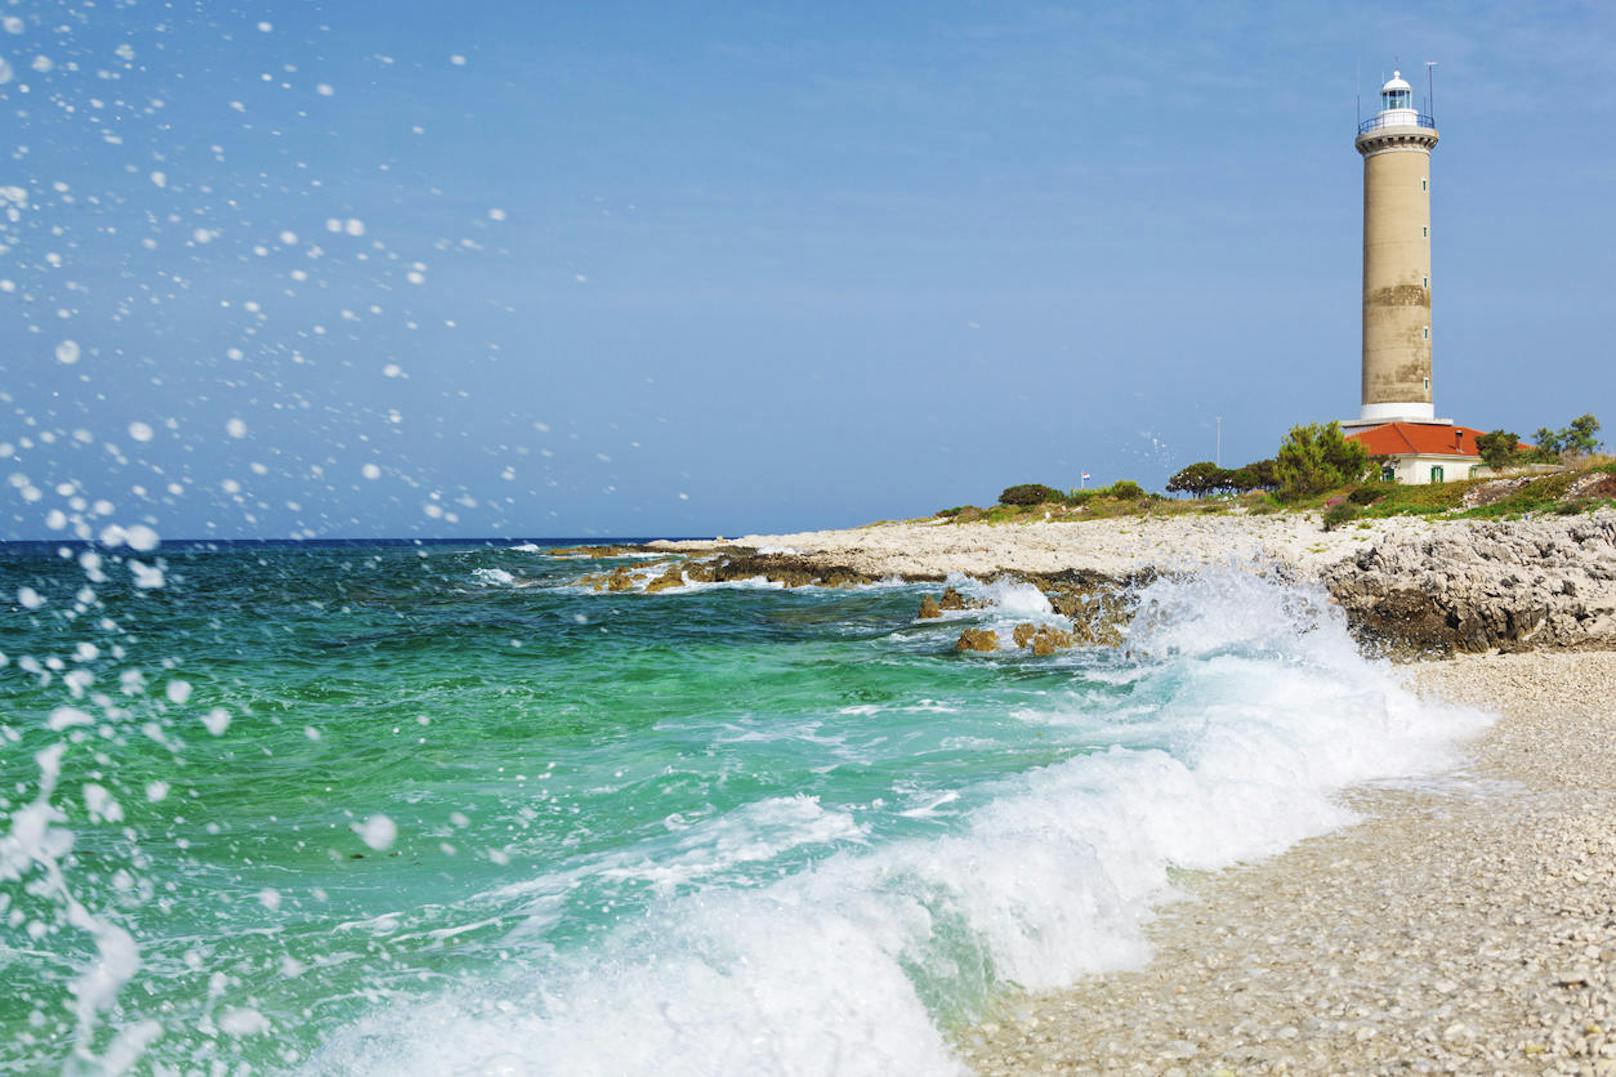 Weniger einsam, dafür umso idyllischer präsentiert sich hingegen die Insel Dugi Otok in Dalmatien.